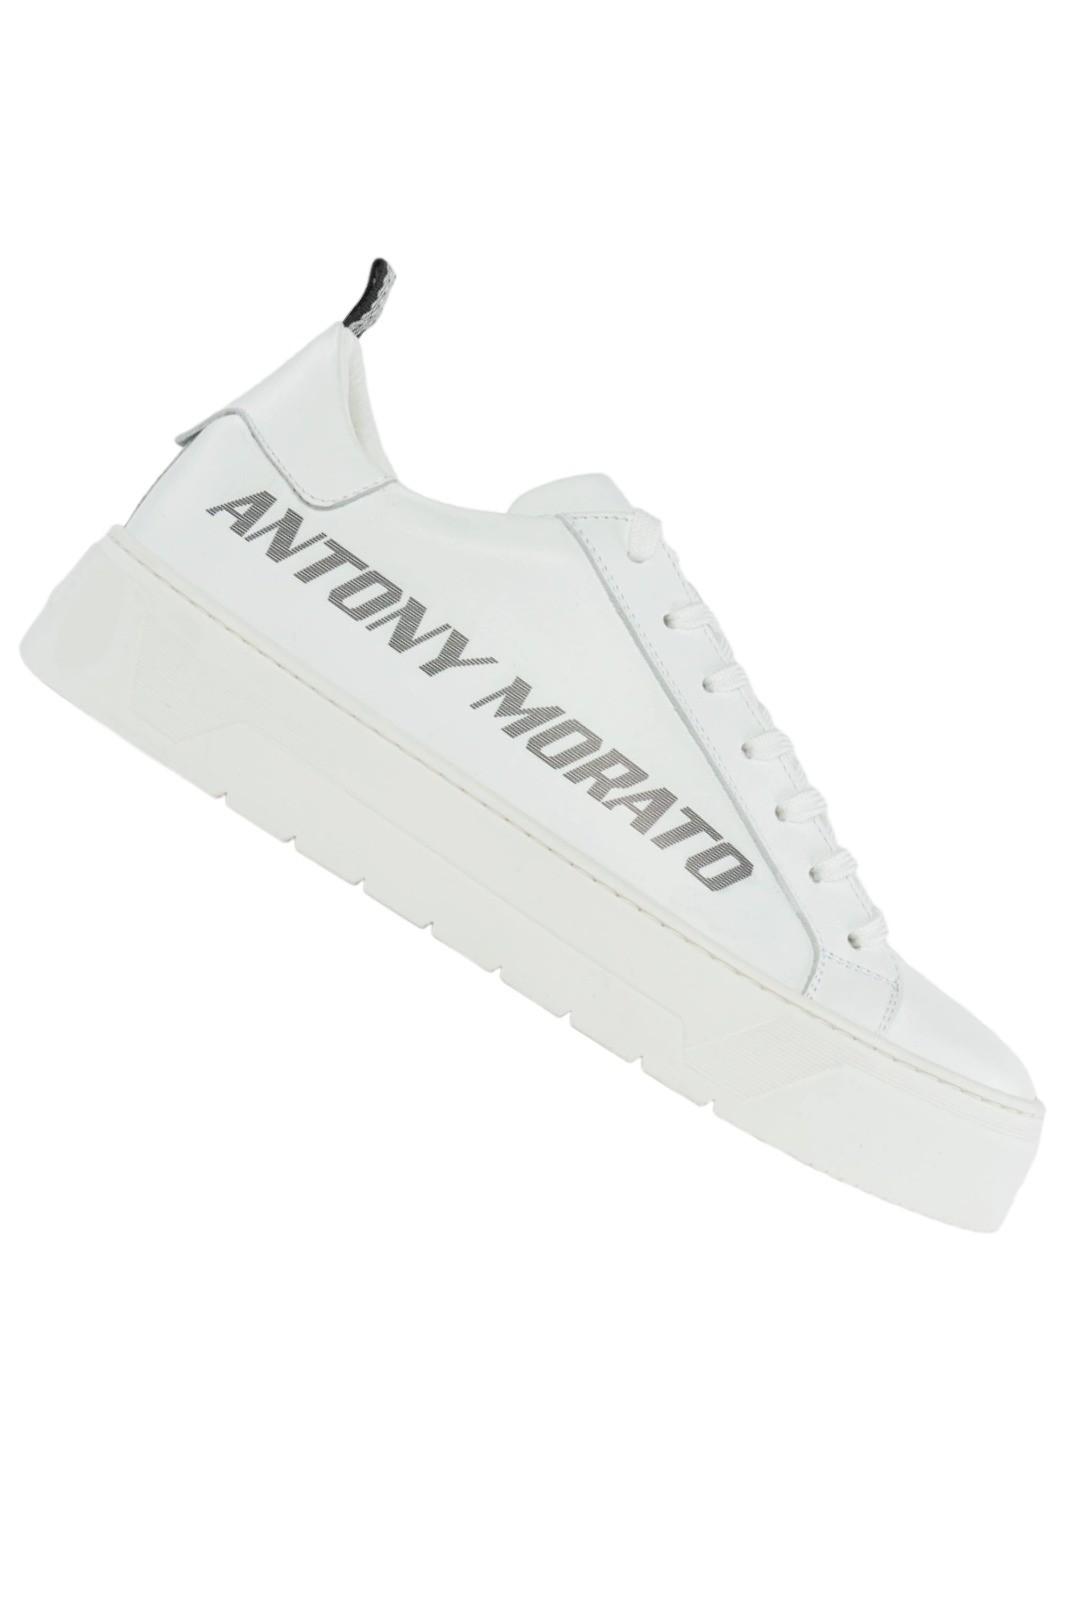 Shoes Antony Morato White Leather